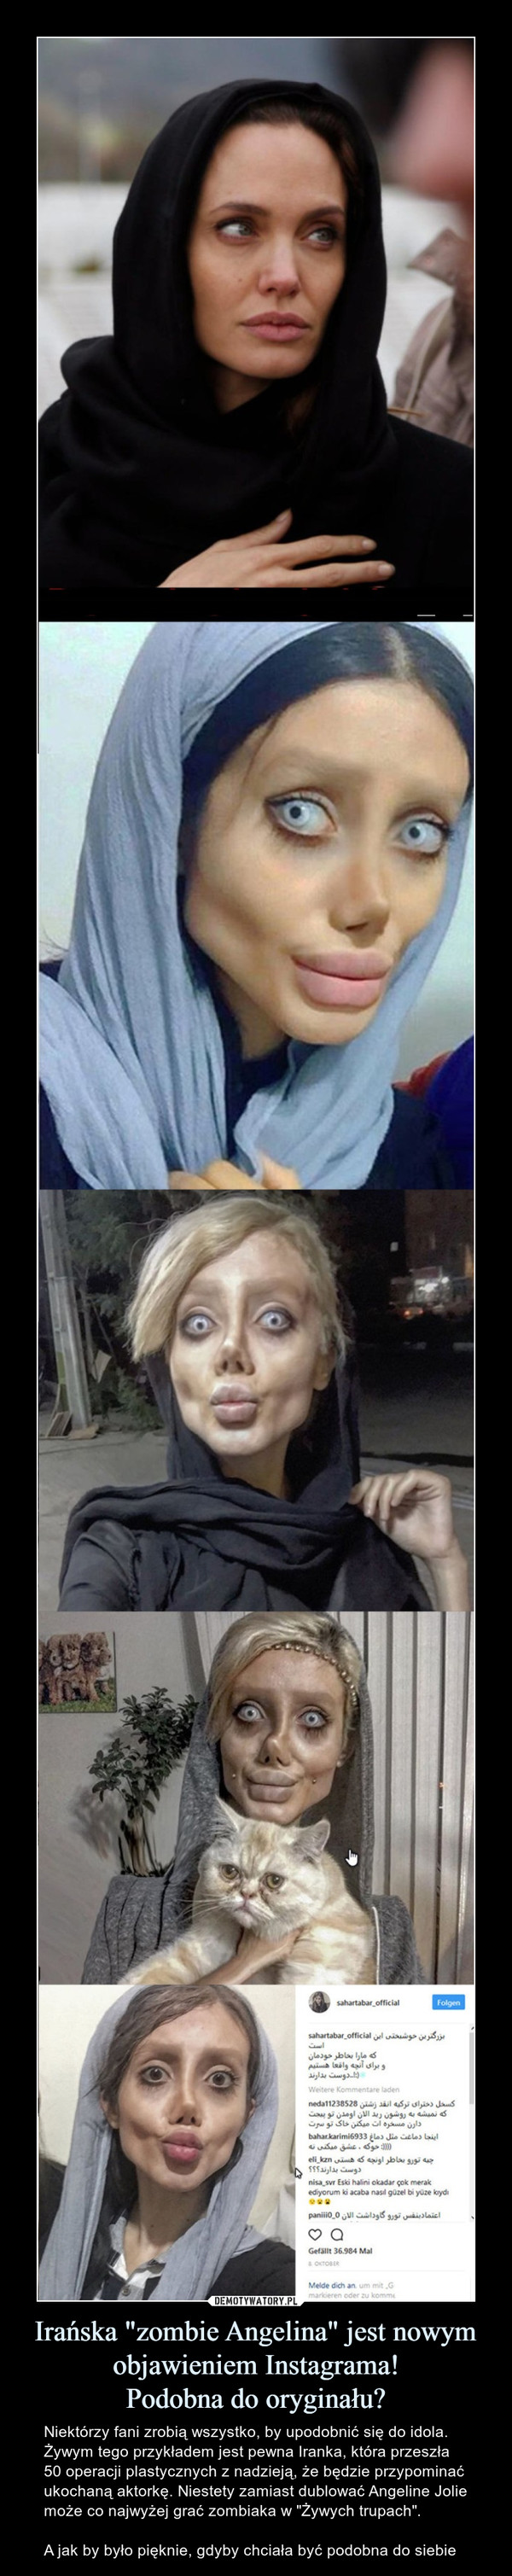 Irańska "zombie Angelina" jest nowym objawieniem Instagrama!
Podobna do oryginału?